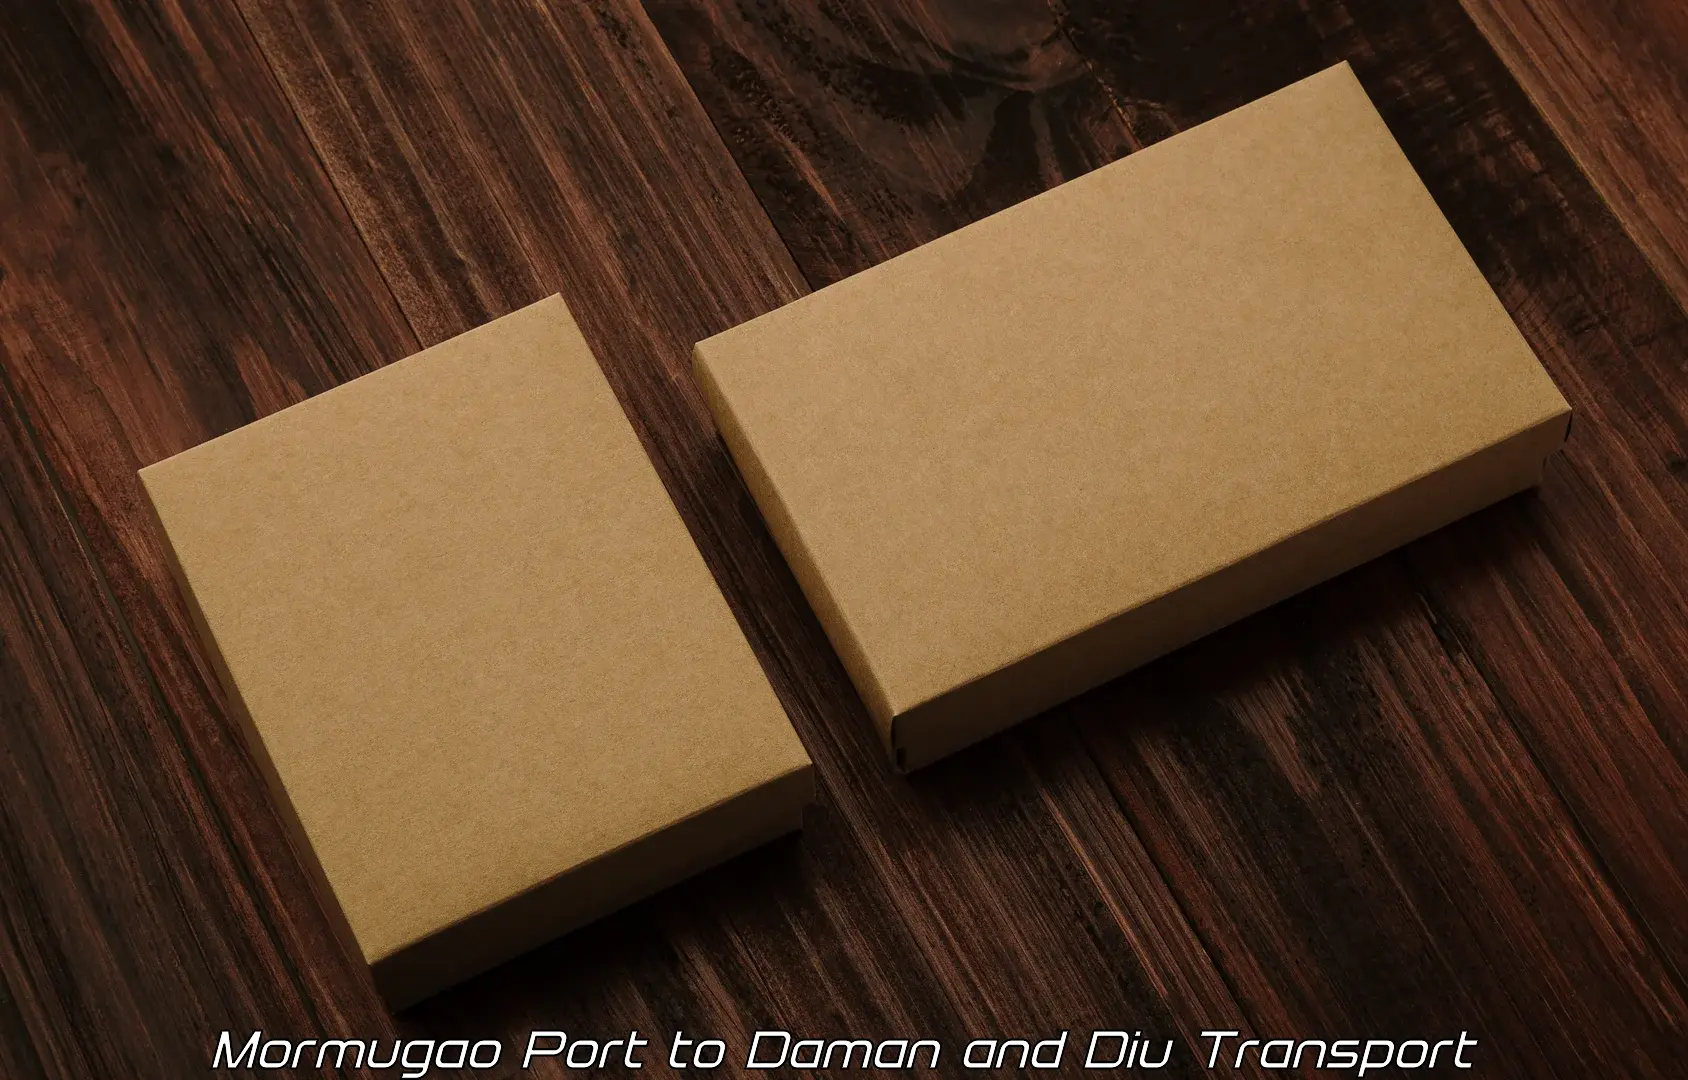 Lorry transport service Mormugao Port to Daman and Diu